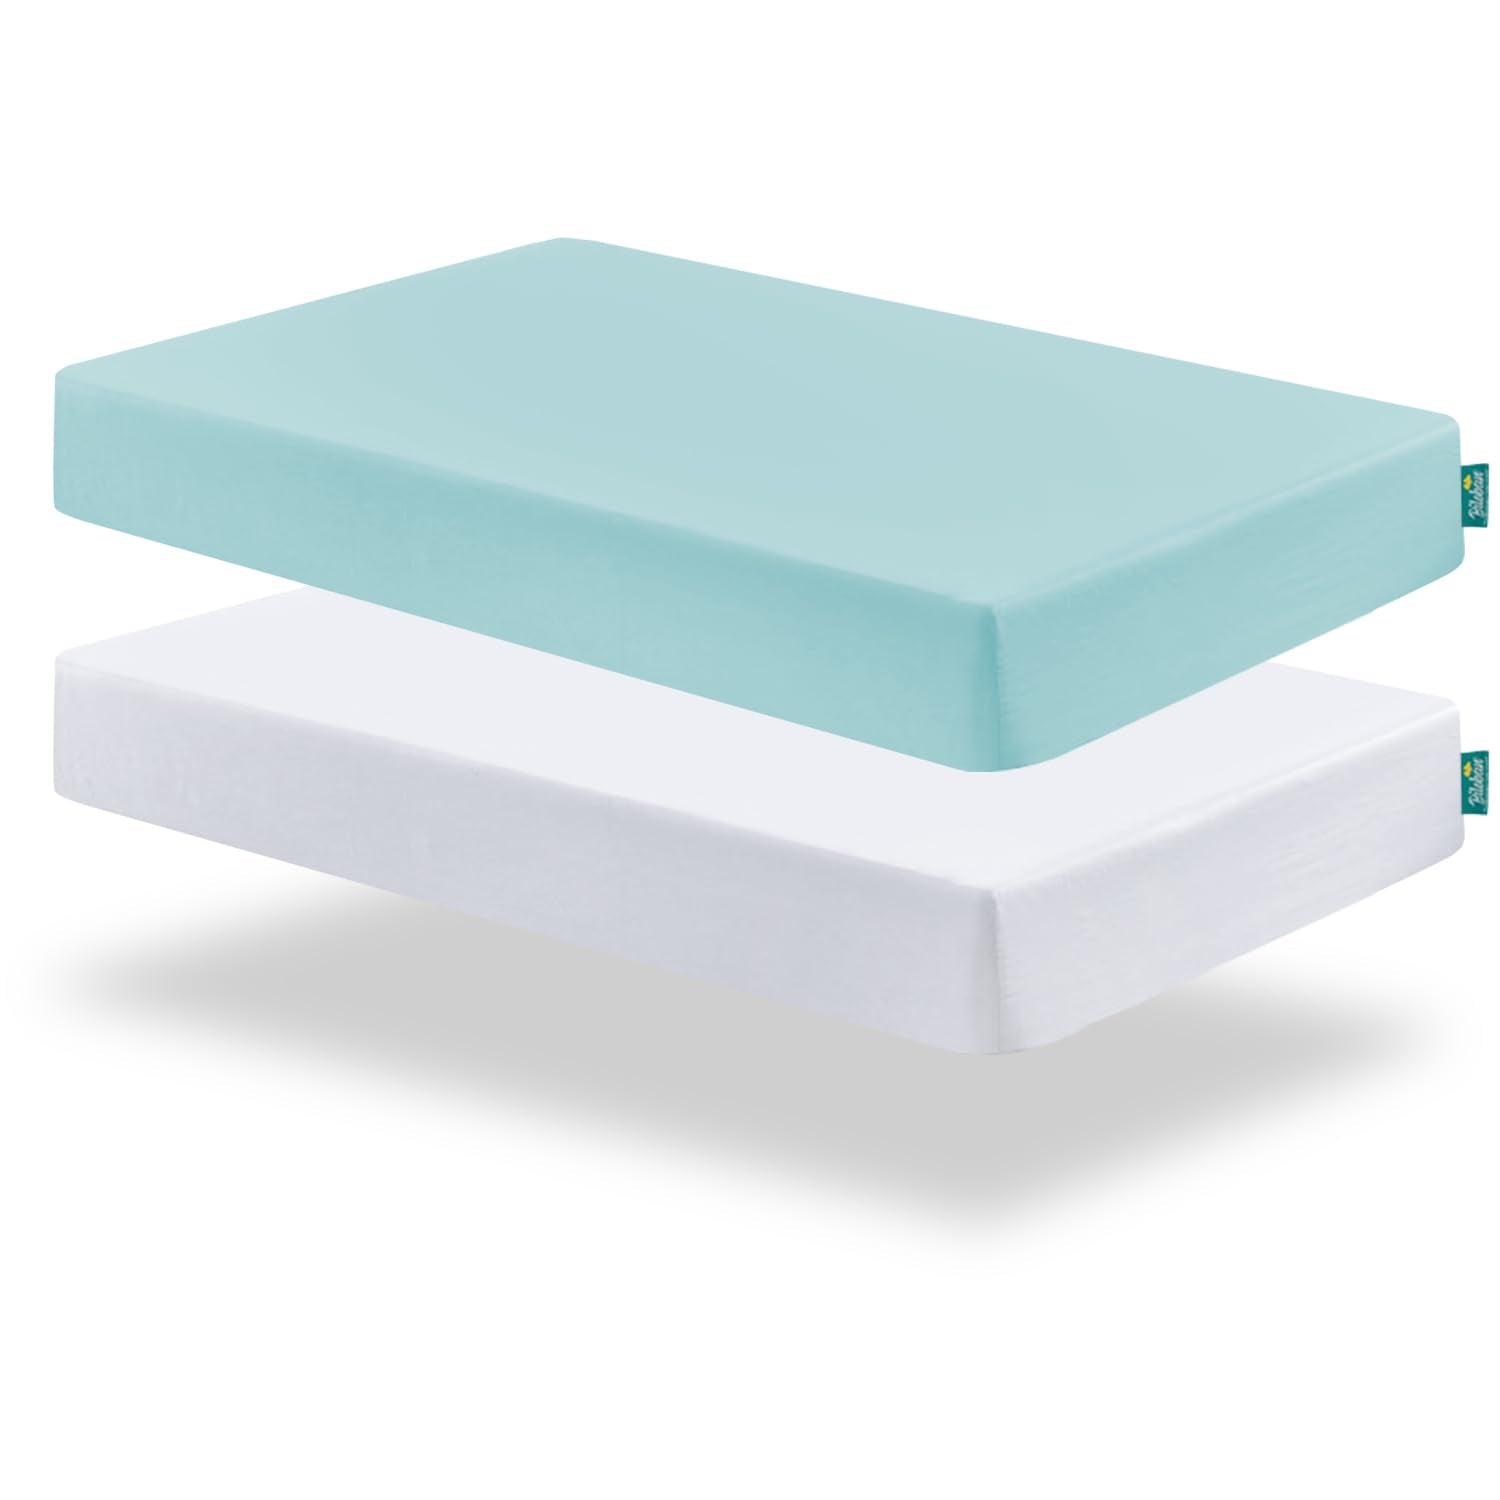 Crib Sheet - 2 Pack, Ultra Soft Microfiber (for Standard Crib/ Toddler Bed), Aqua & White - Biloban Online Store